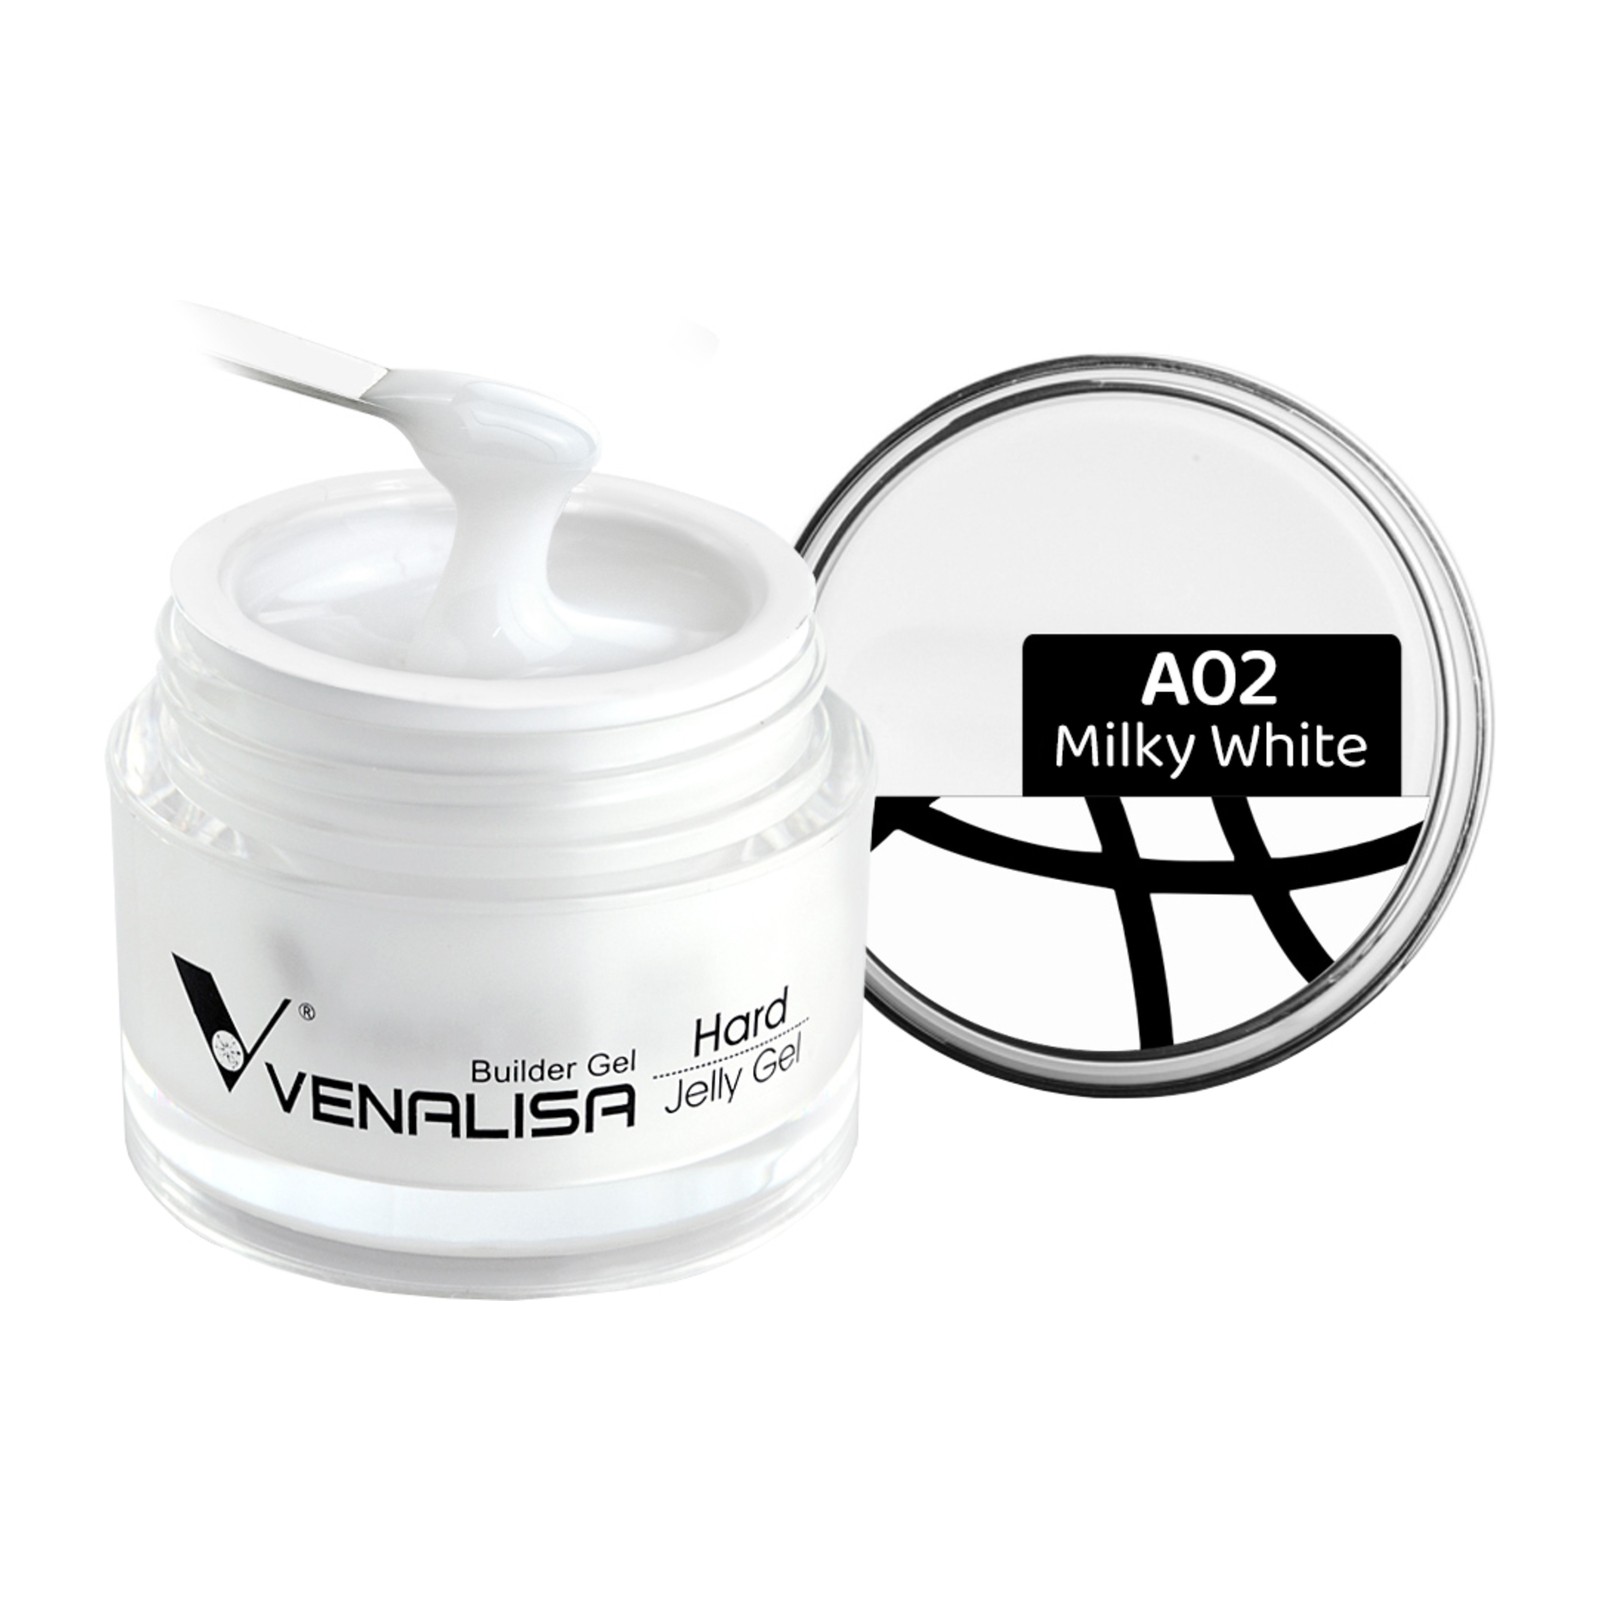 Venalisa -  A02 Pieno baltumo -  50 ml